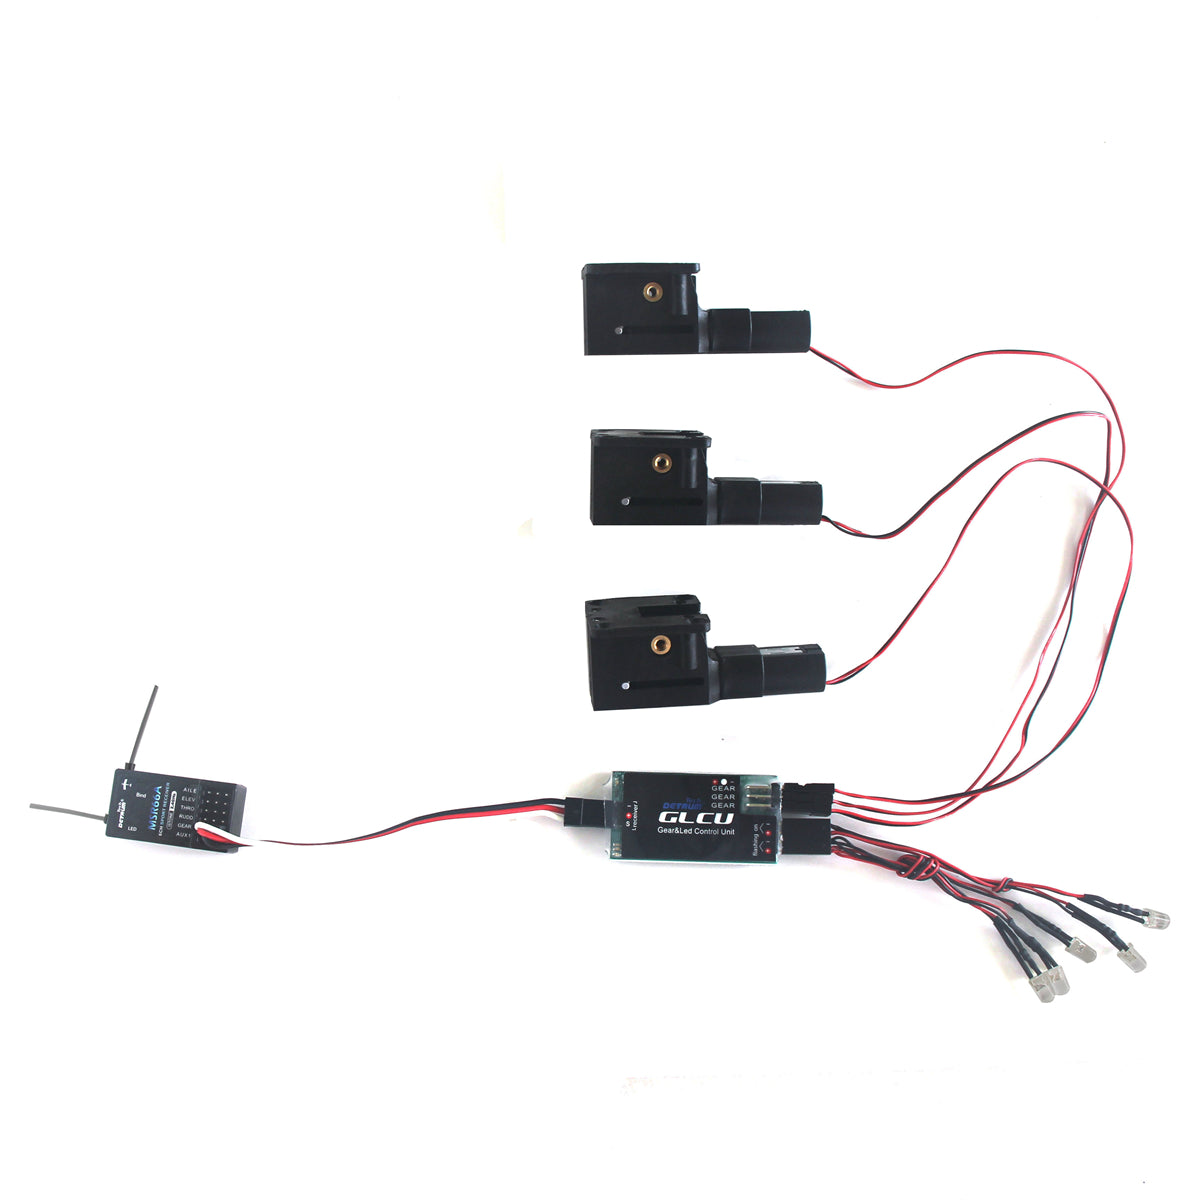 Ensemble rétractable électrique Dynam avec engrenage et unité de commande LED